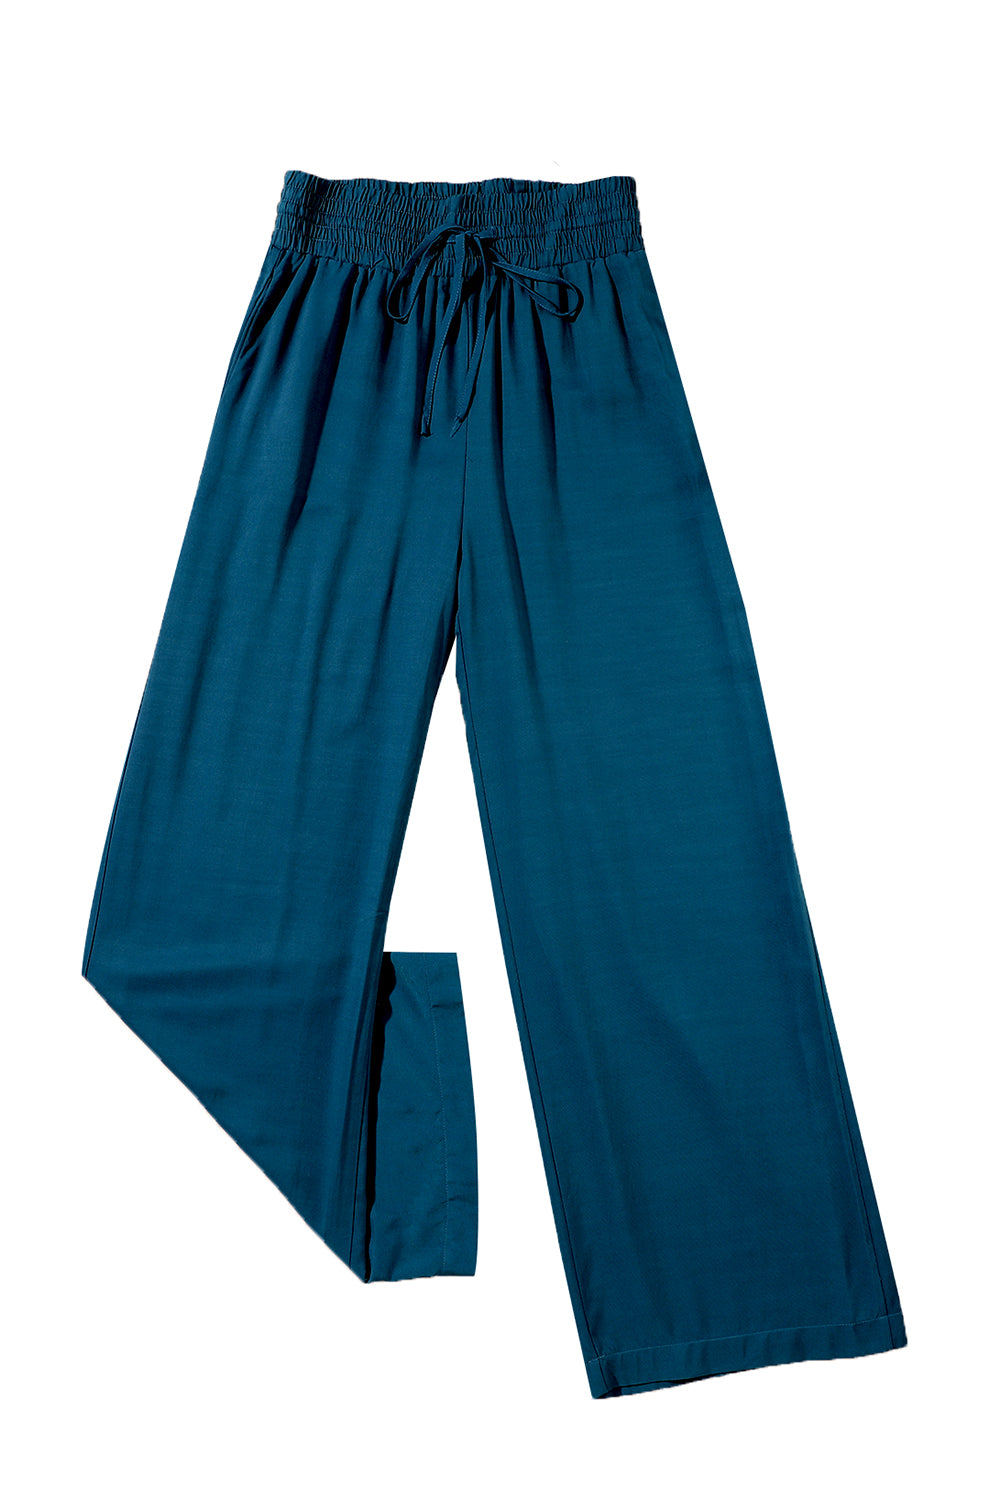 Plave ležerne hlače širokih nogavica s elastičnim strukom